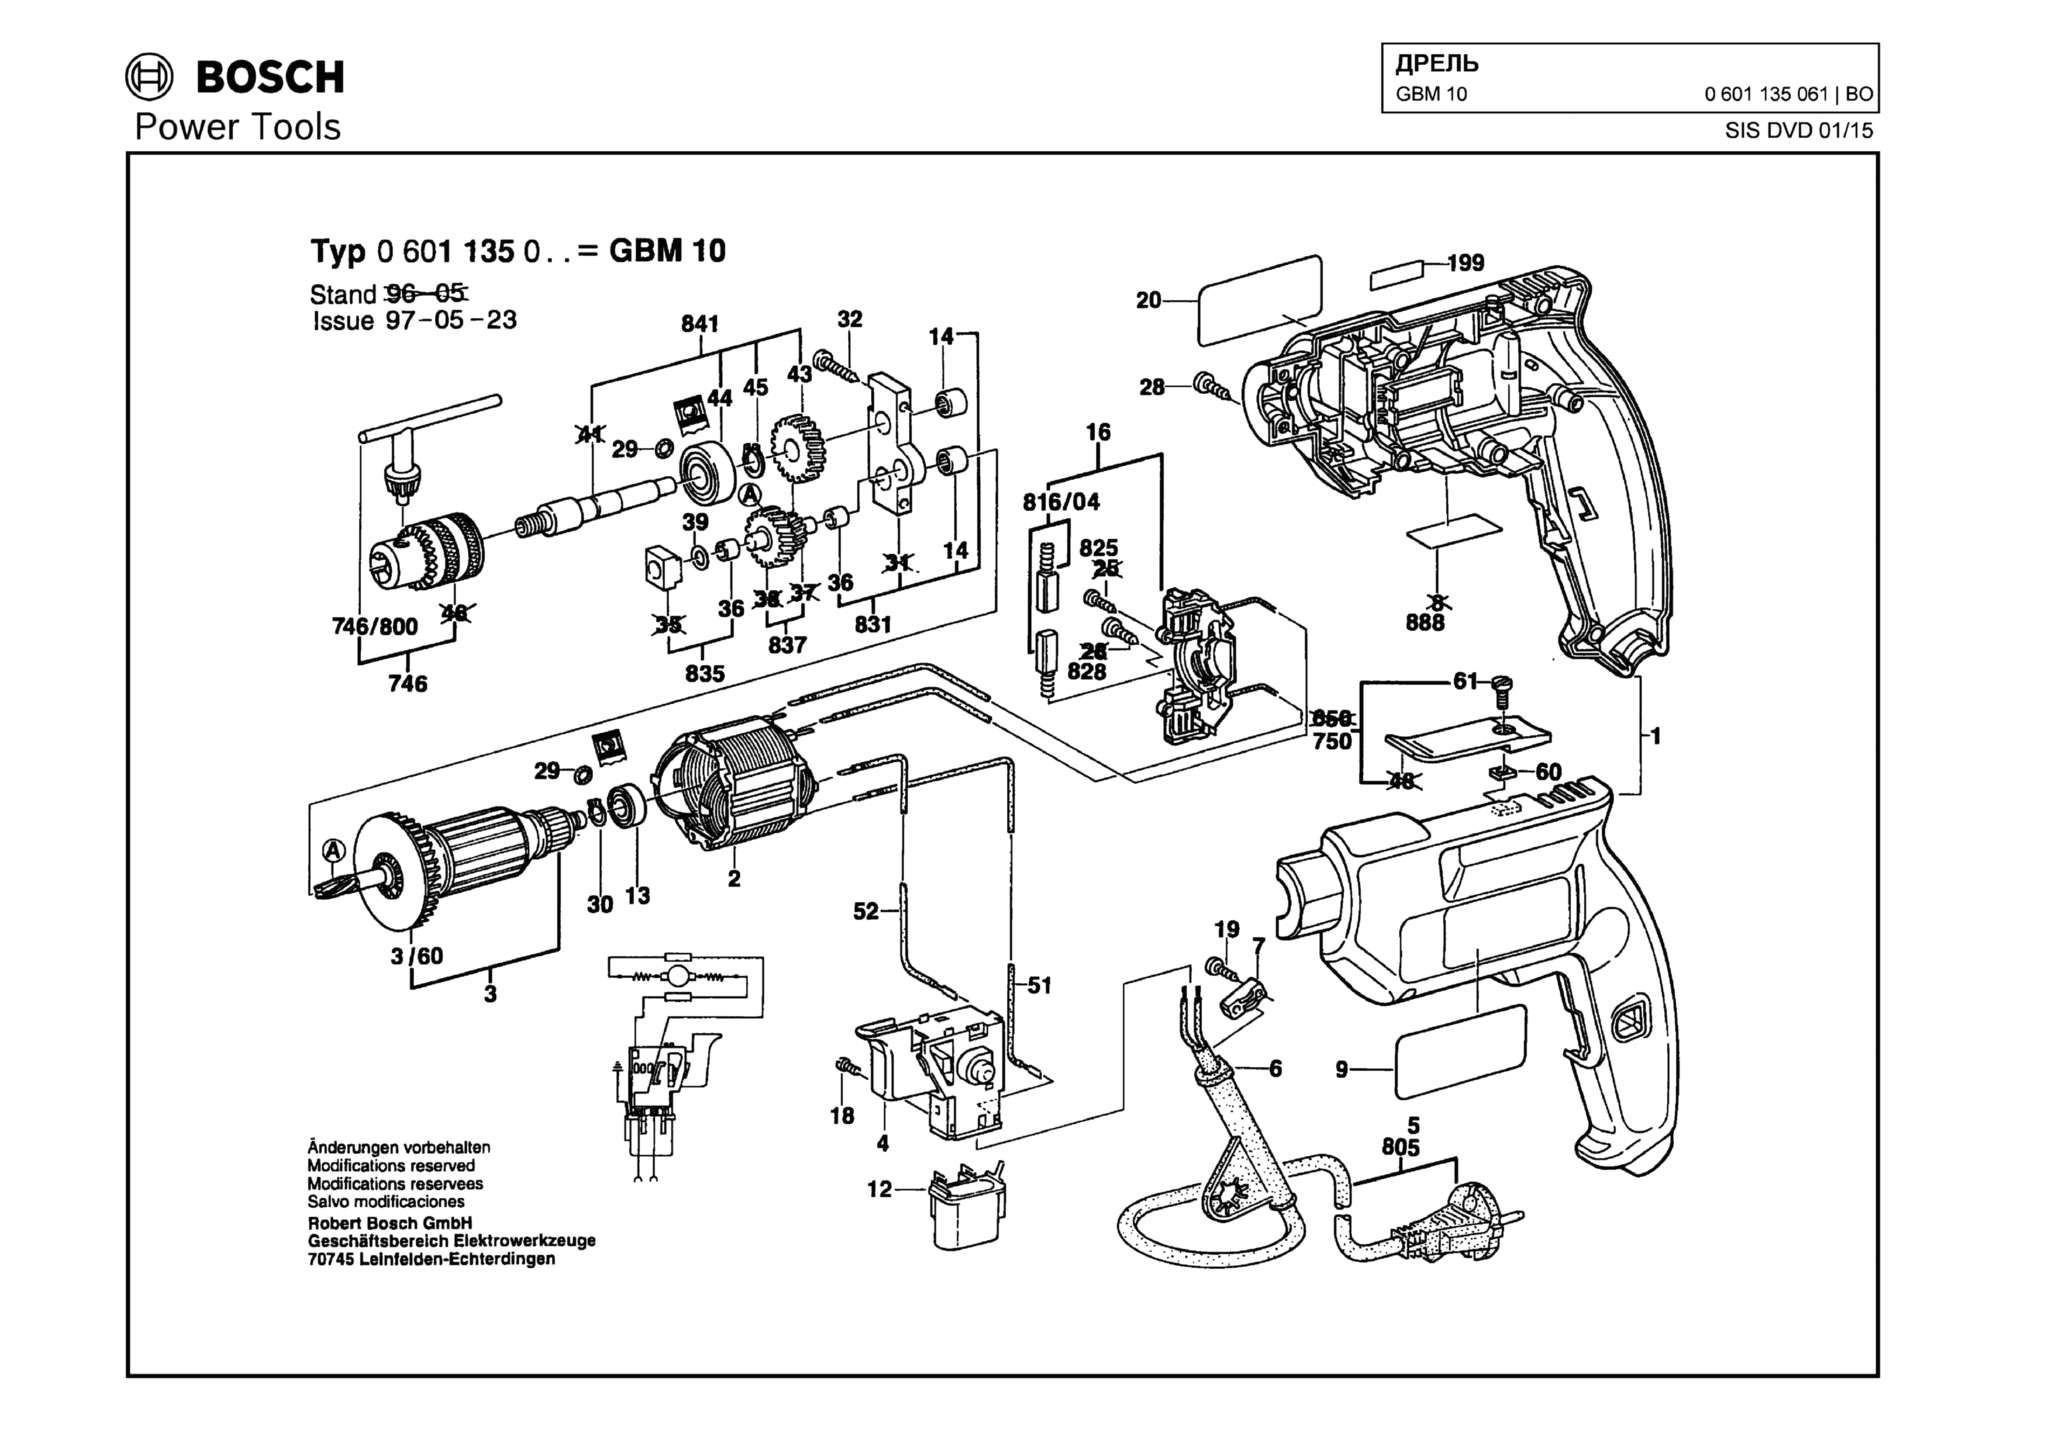 Запчасти, схема и деталировка Bosch GBM 10 (ТИП 0601135061)